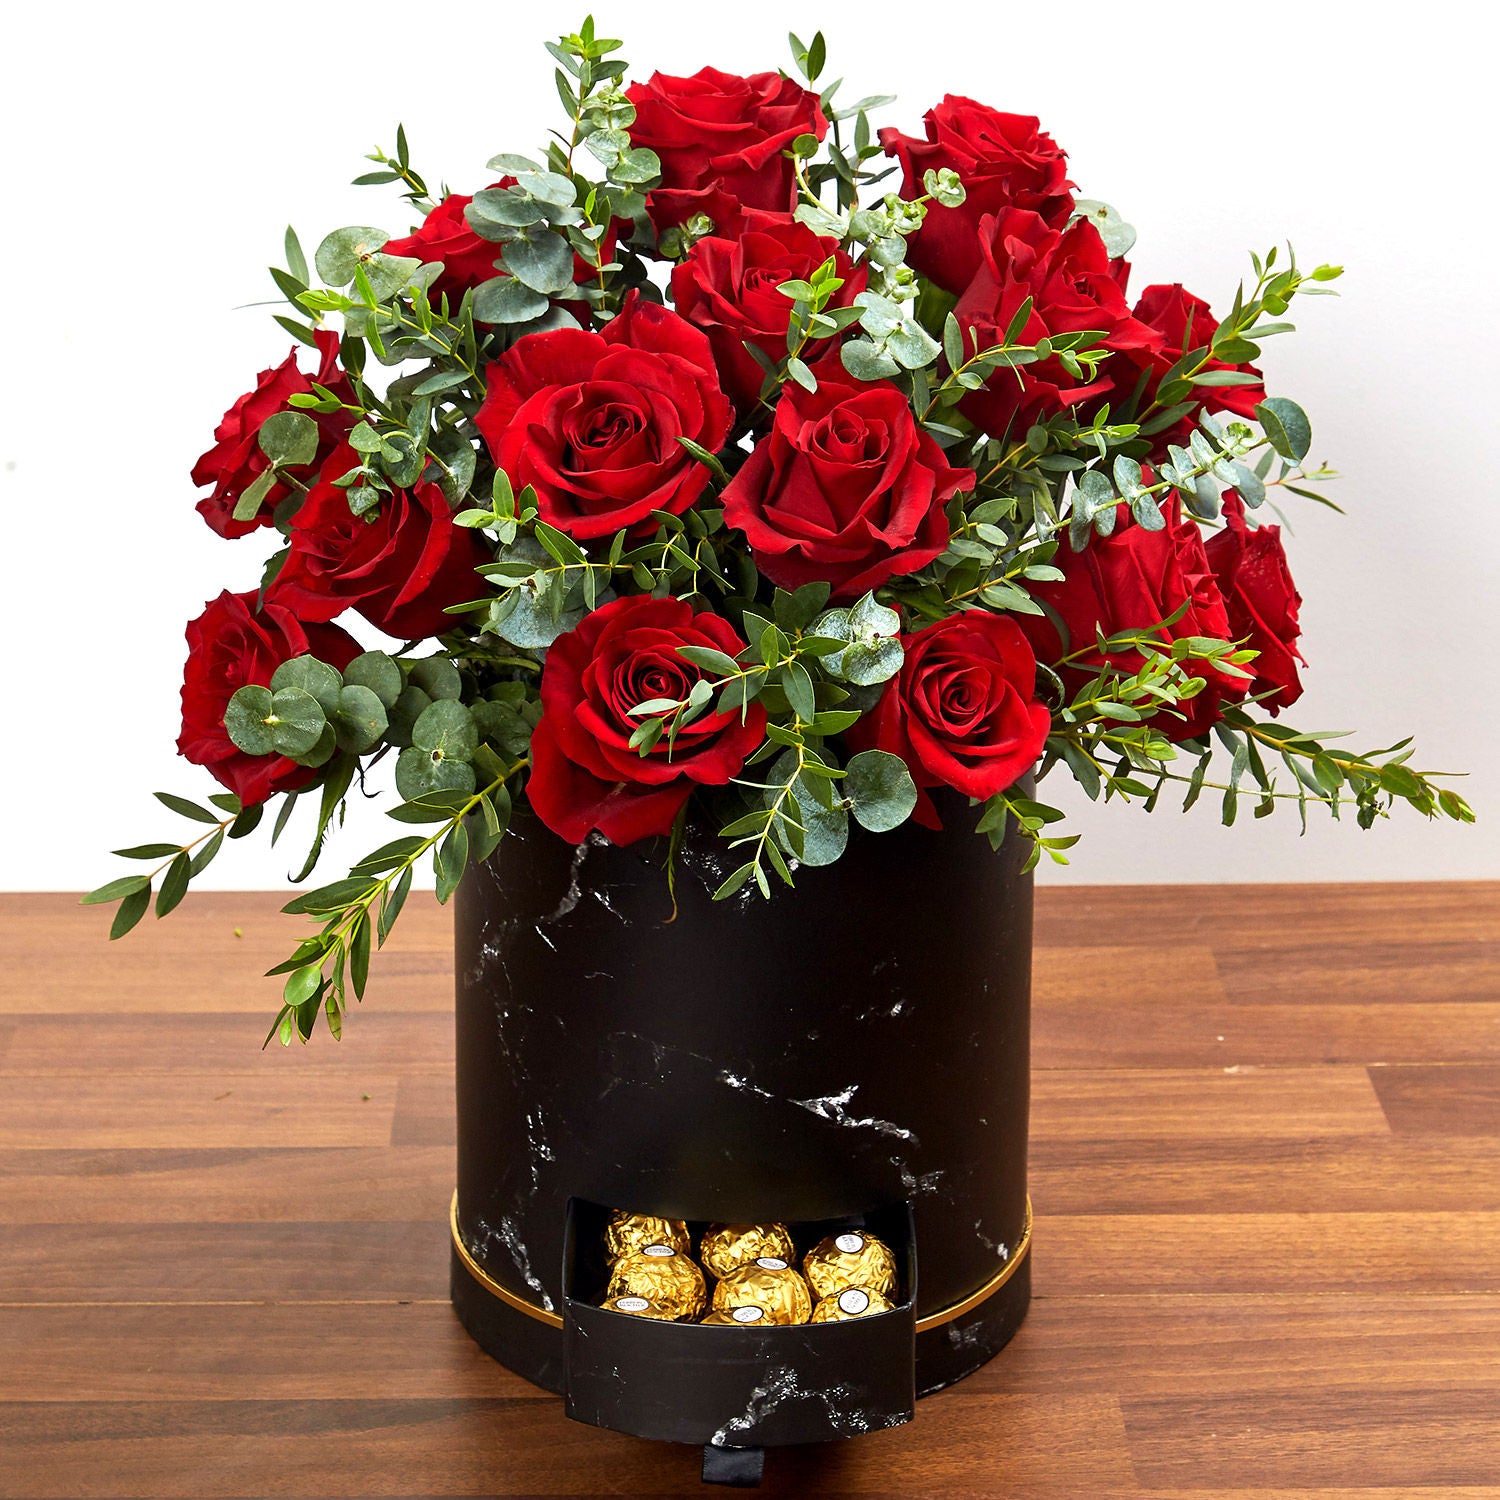 باقة 30 وردة حمراء جوري في بوكس مع شوكولاته فيريروروشيه